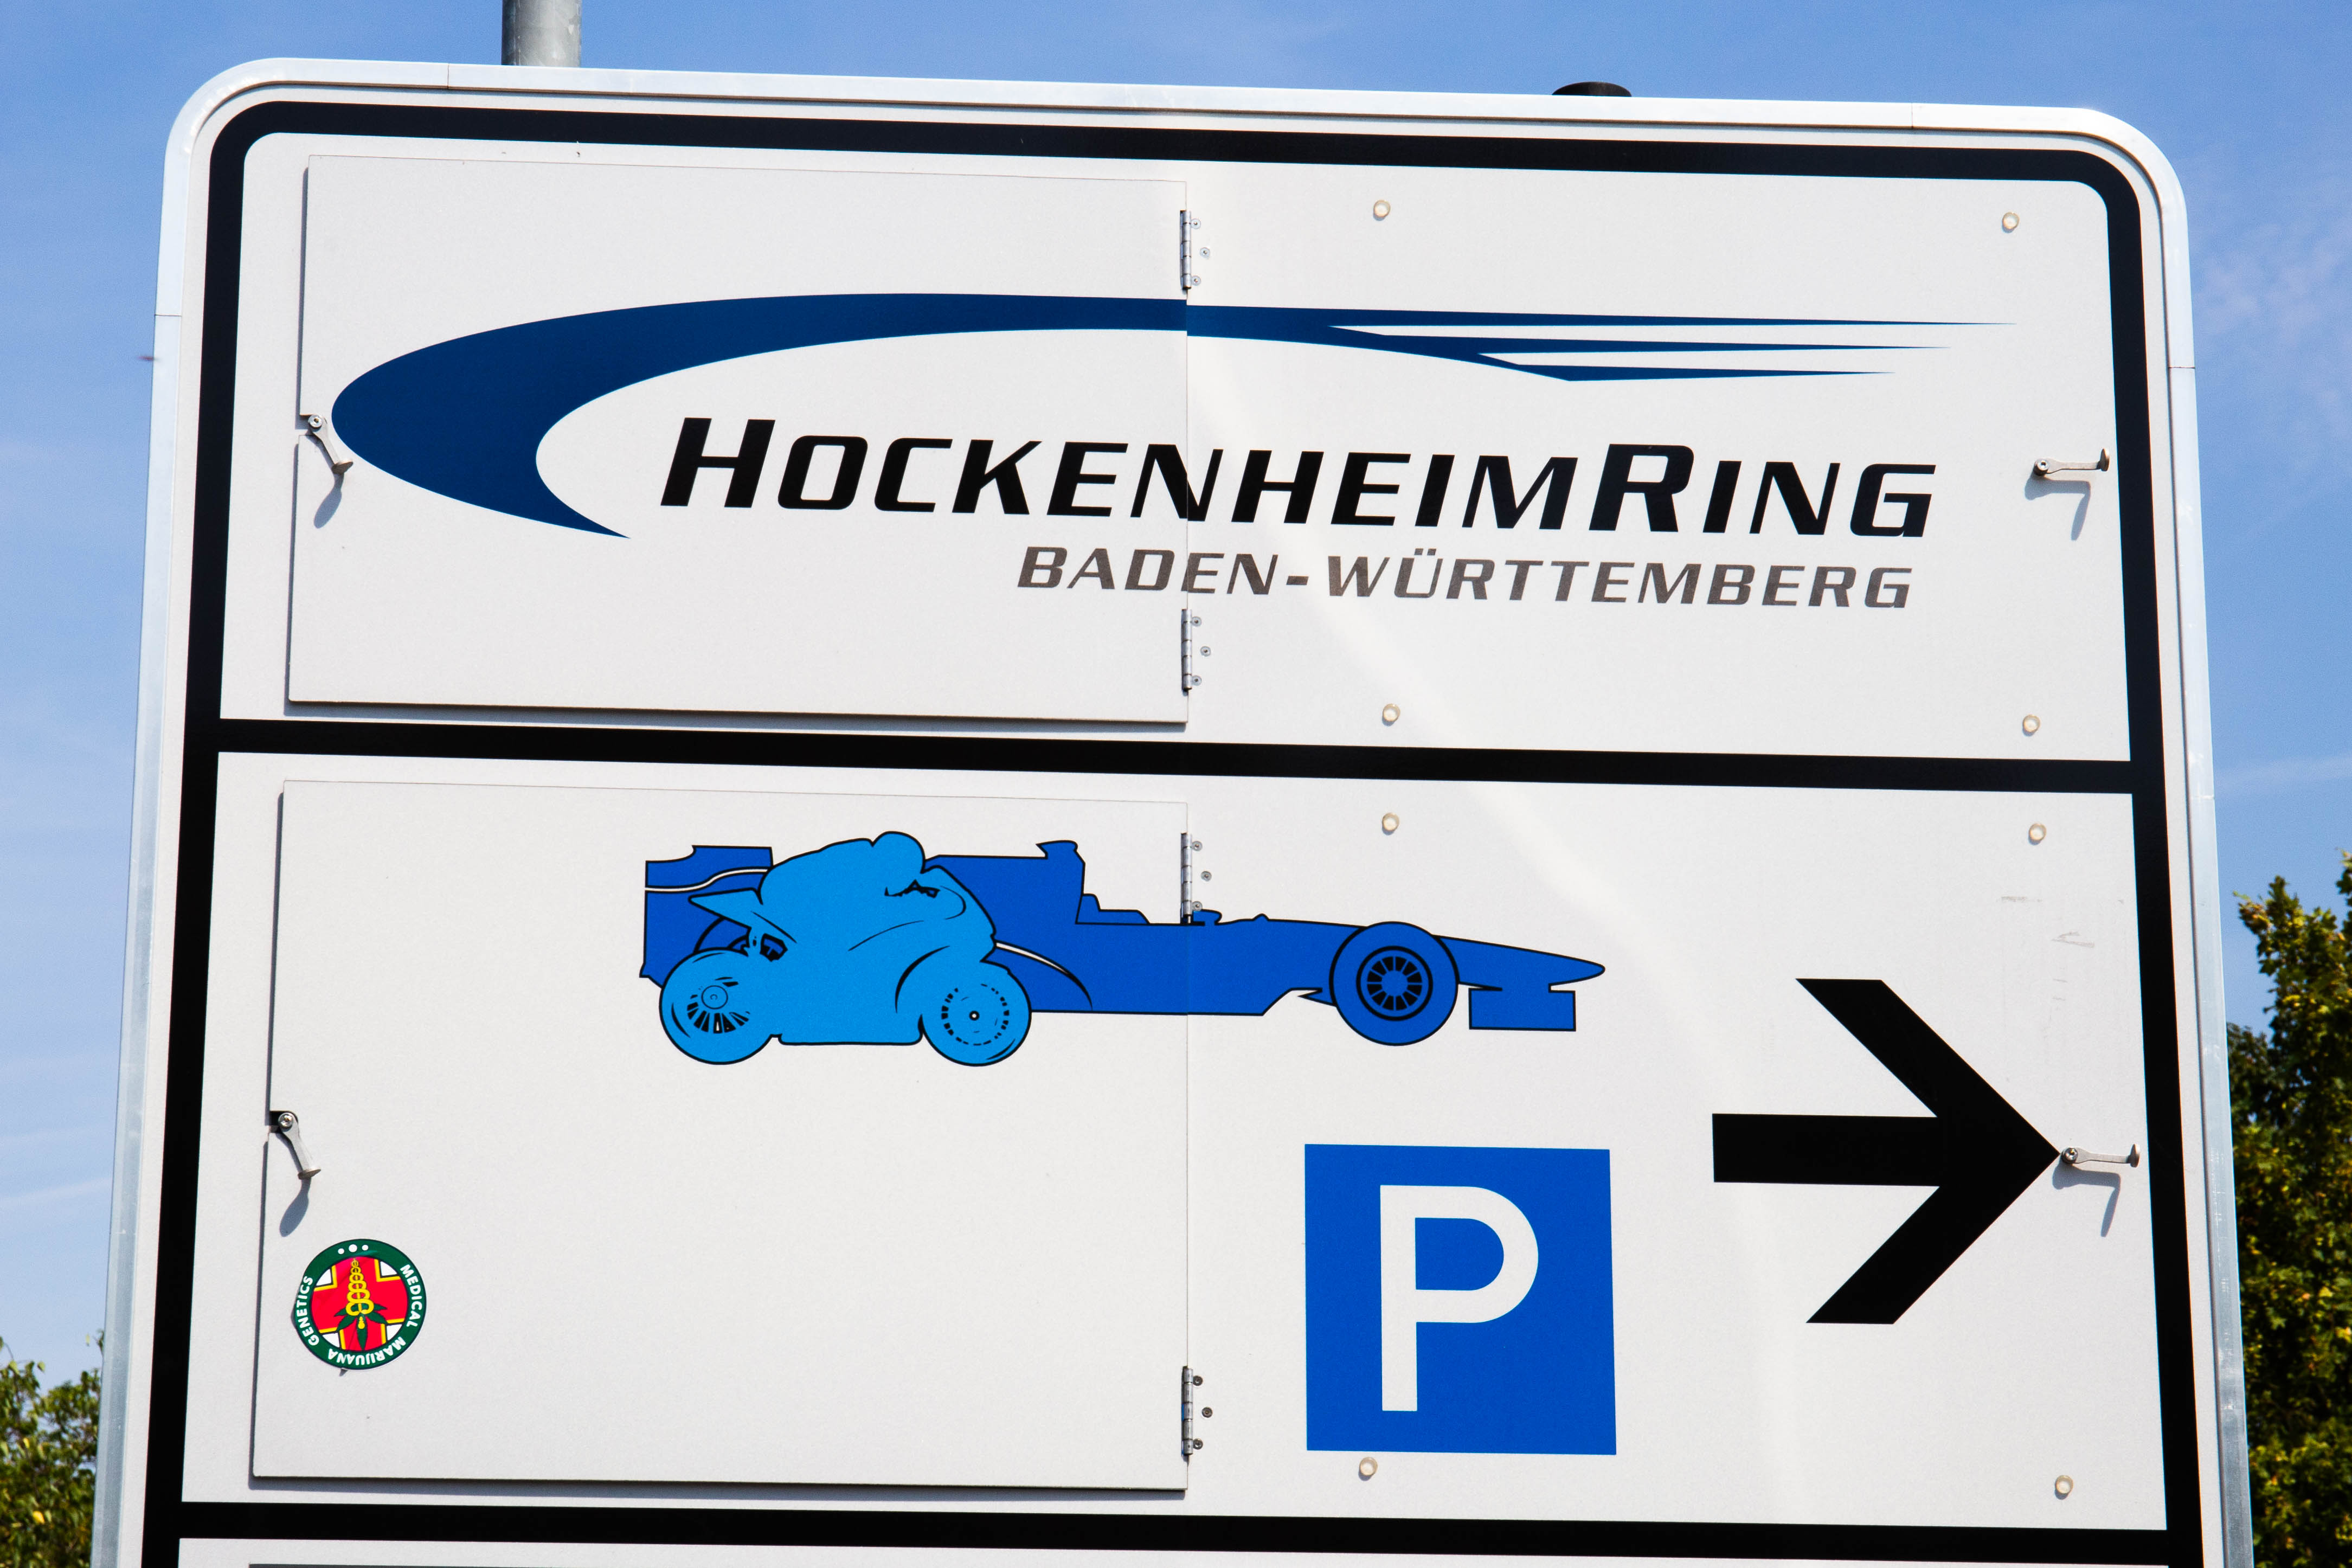 1 camping hockenheimring formel Hockenheimring Baden